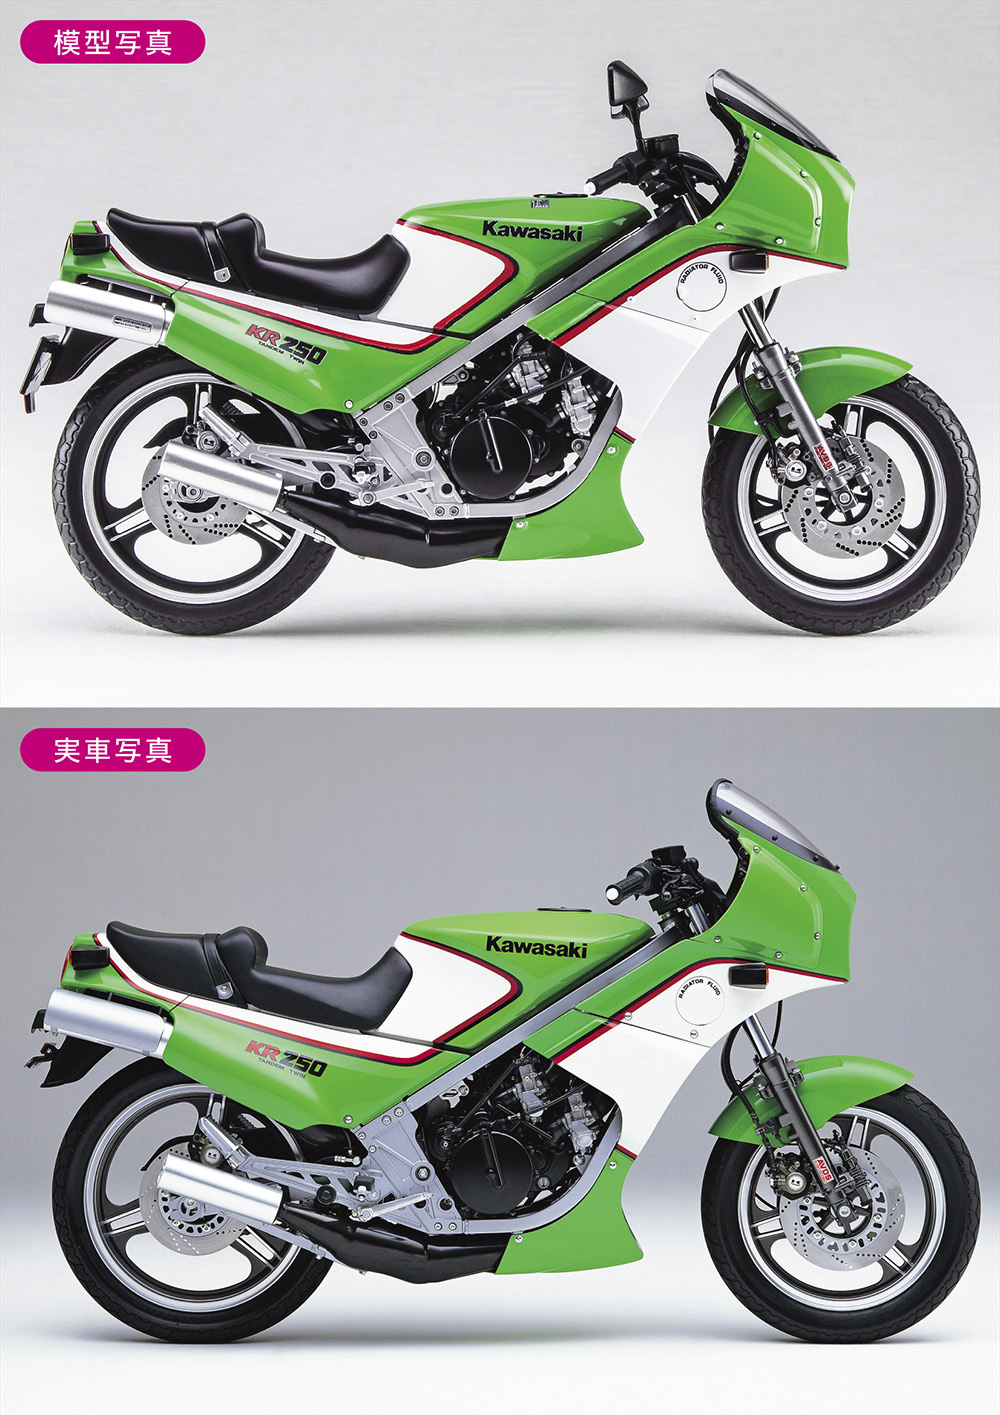 カワサキ KR250 (KR250A) 1984 プラモデル (ハセガワ 1/12 バイクシリーズ No.BK-012) 商品画像_3